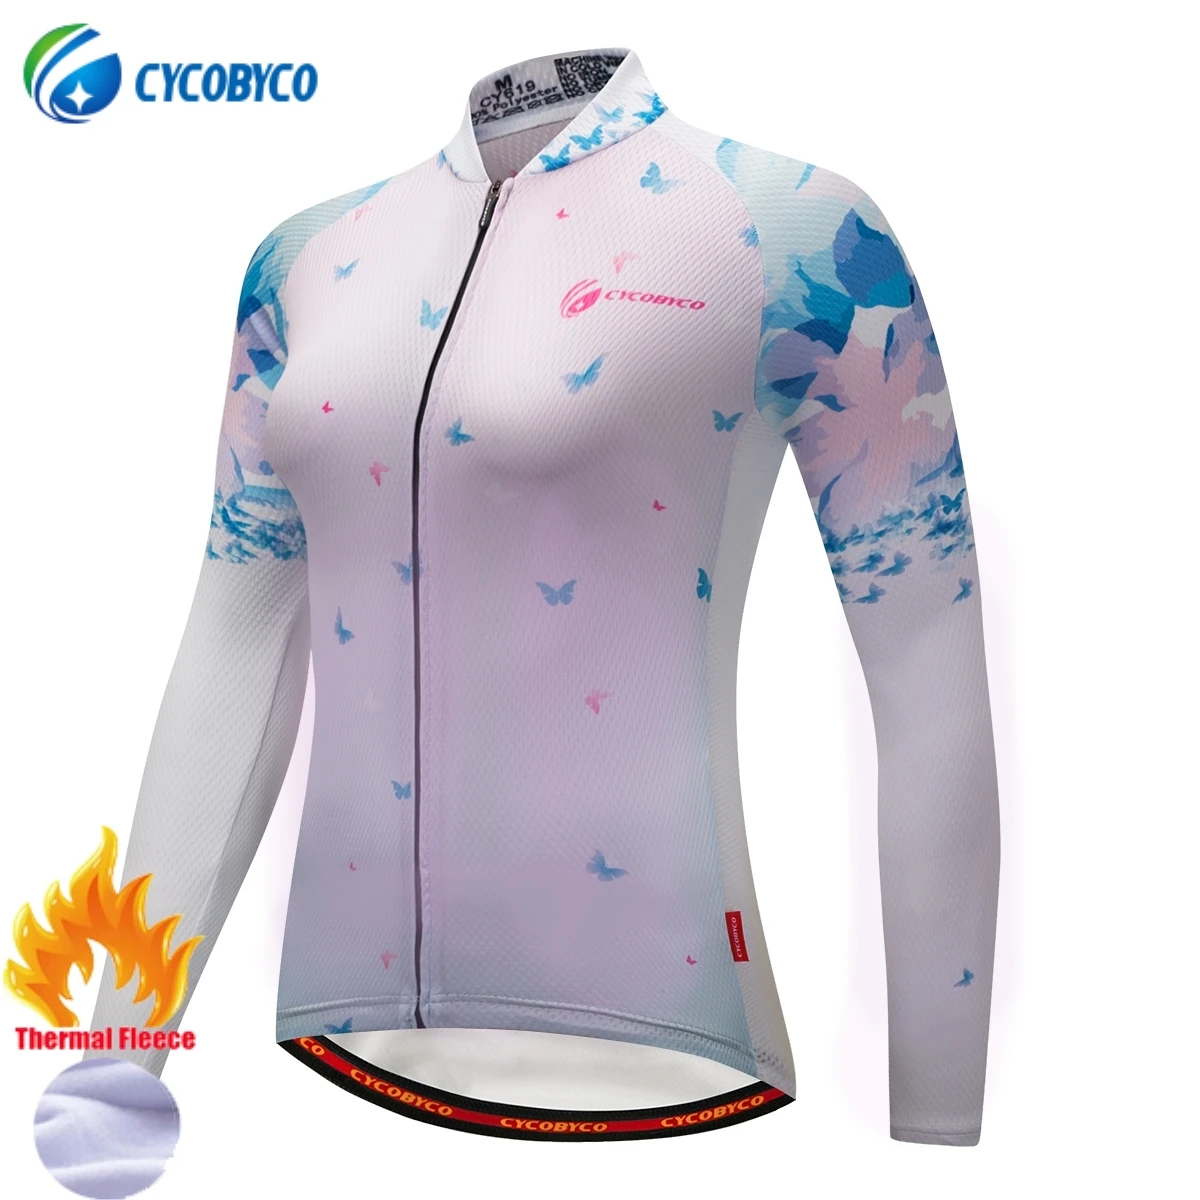 Cycobyco зимняя флисовая женская профессиональная велосипедная майка, велосипедная одежда с длинным рукавом, супер теплая термальная Спортивная одежда для гонок на велосипеде